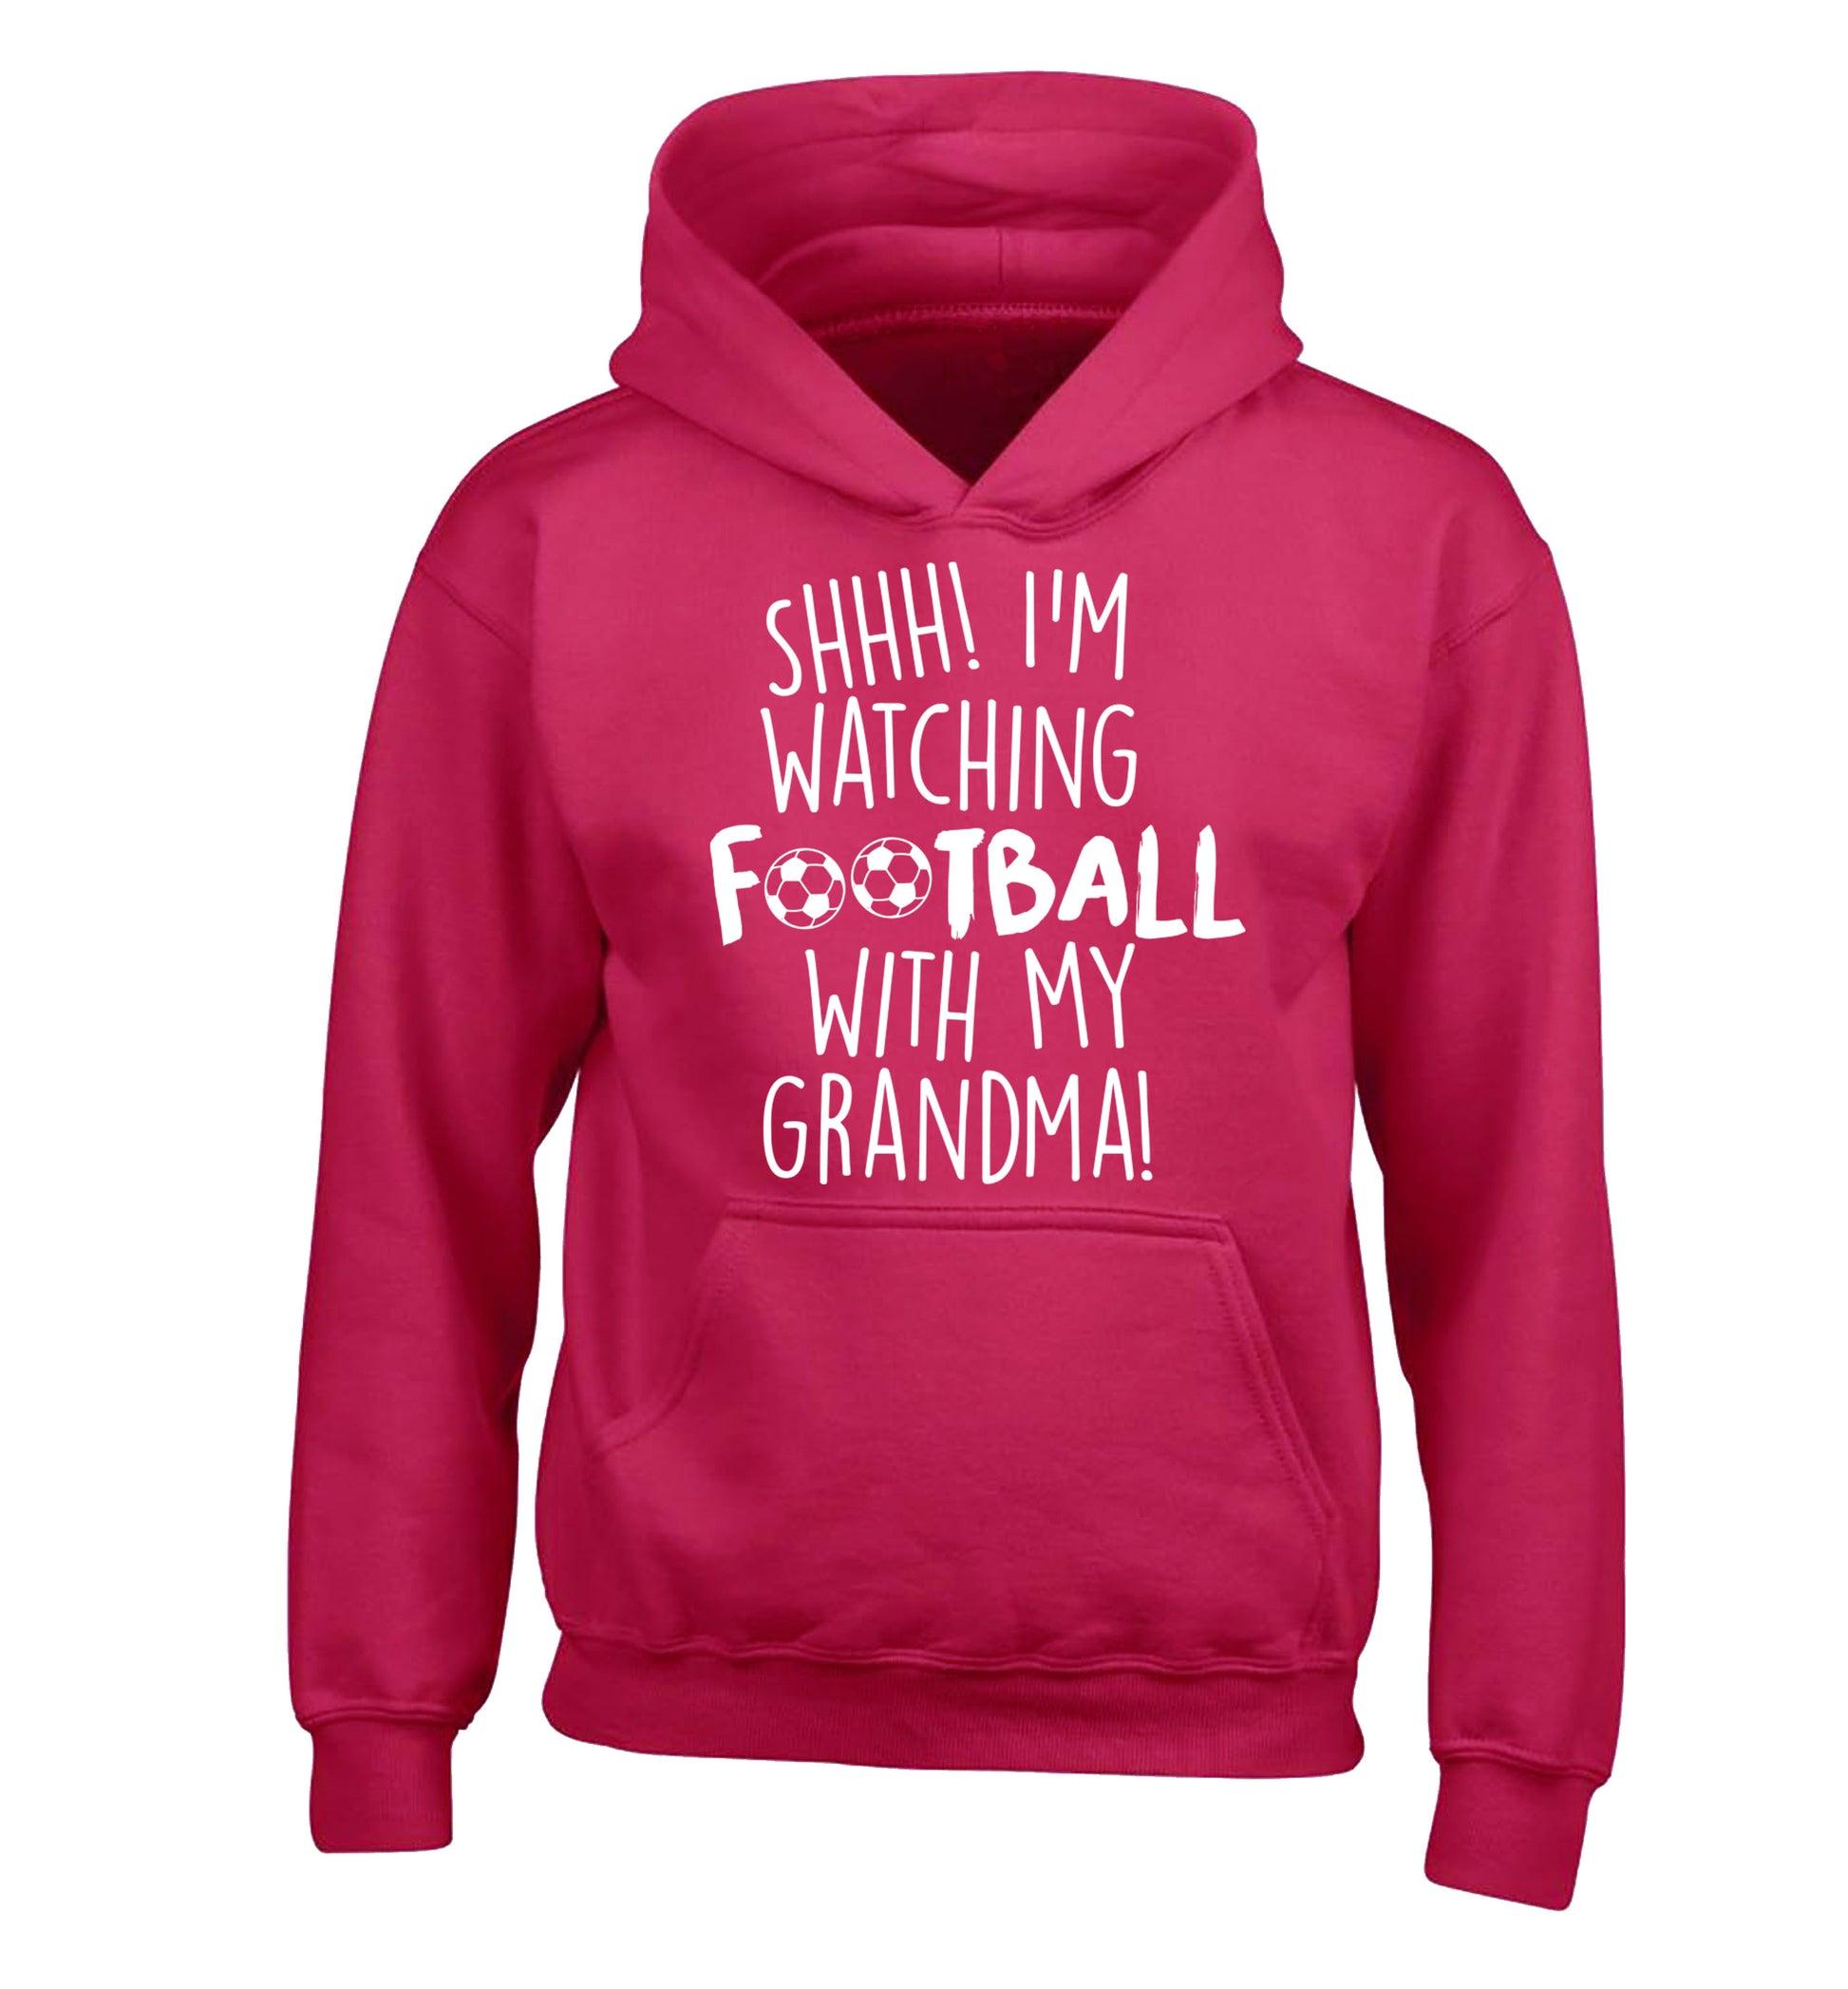 Shhh I'm watching football with my grandma children's pink hoodie 12-14 Years